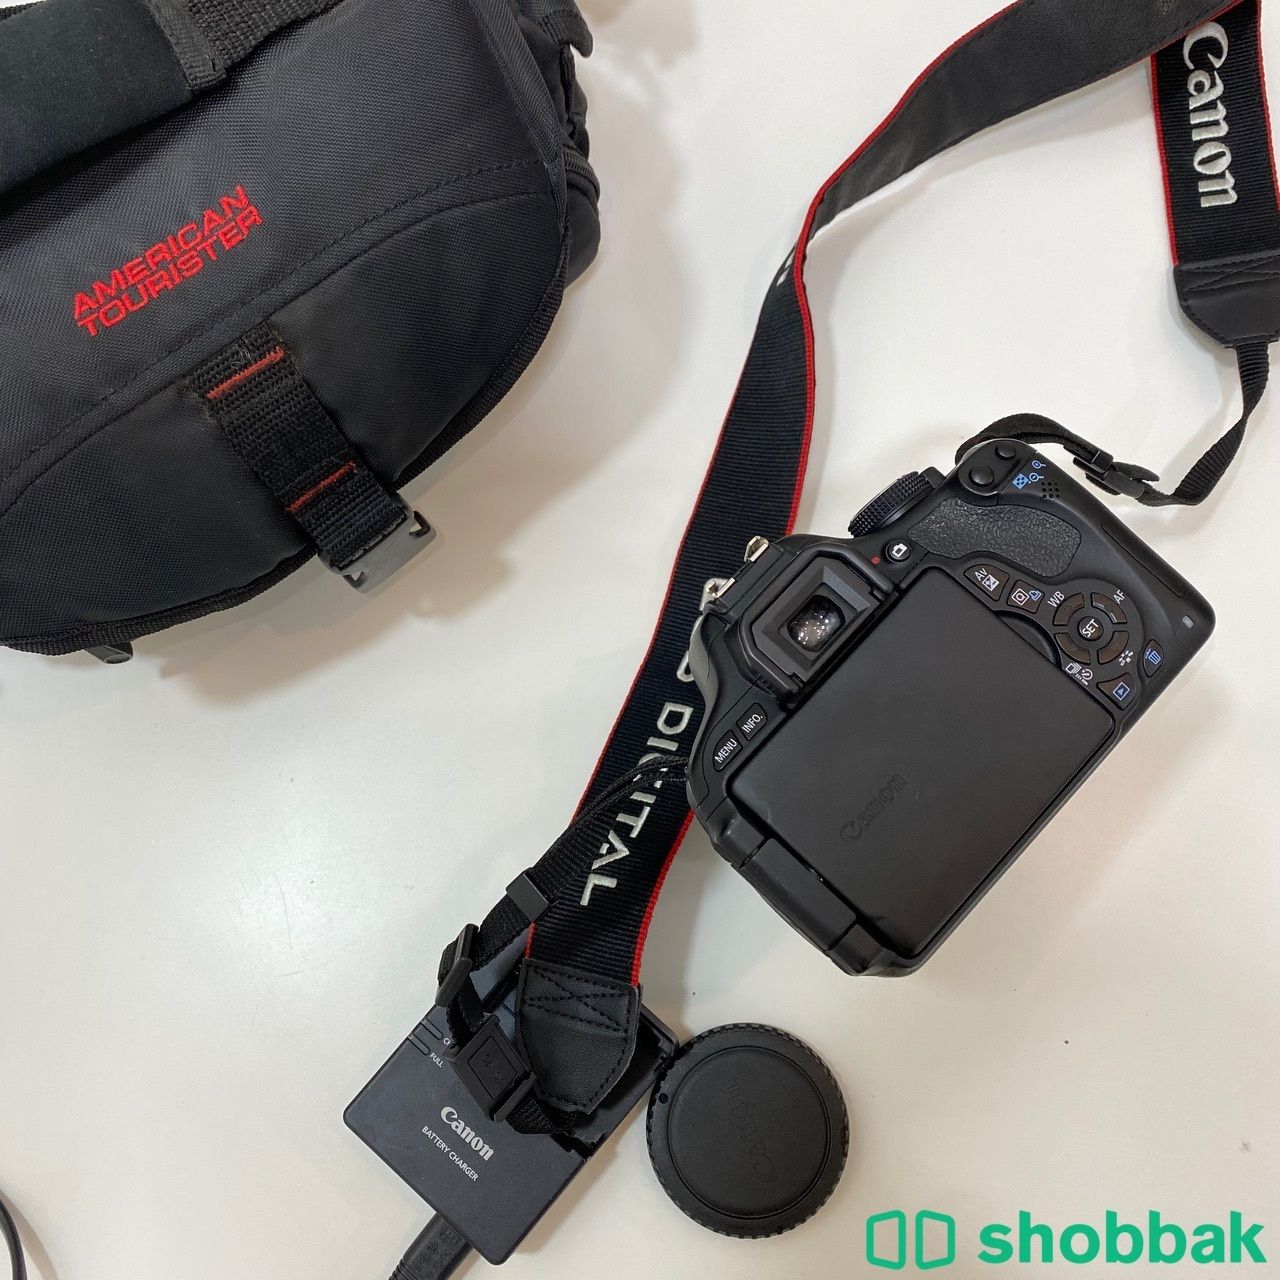 كاميرة كانون للبيع Shobbak Saudi Arabia